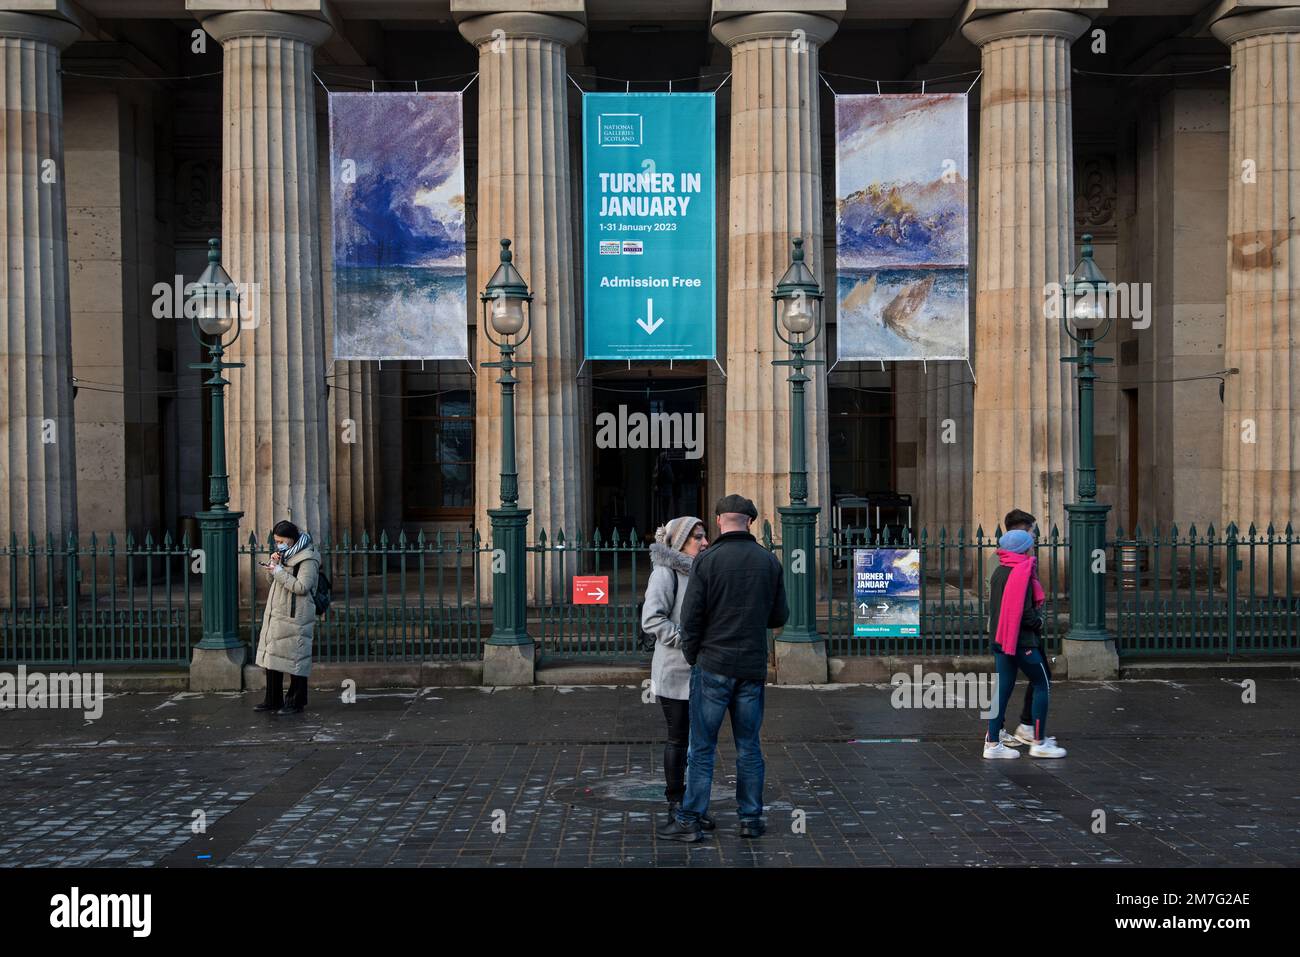 Turner im Januar werden Banner für die jährliche Januar-Ausstellung der Turner-Aquarelle in der National Gallery of Scotland, Edinburgh, werben. Stockfoto